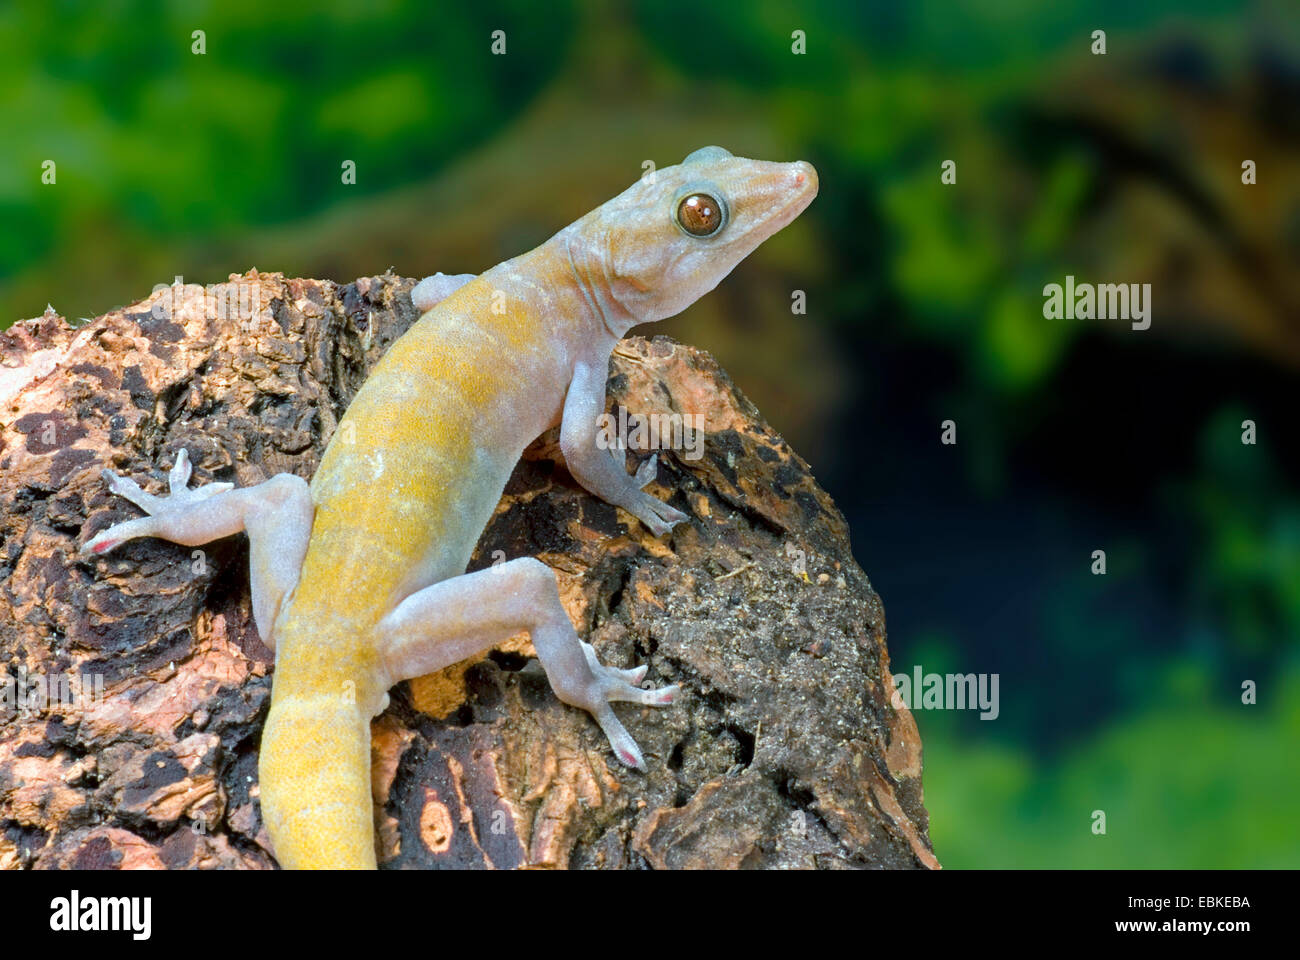 Golden gecko (Gekko ulikovskii auratus, Gekko auratus), rear view Stock Photo